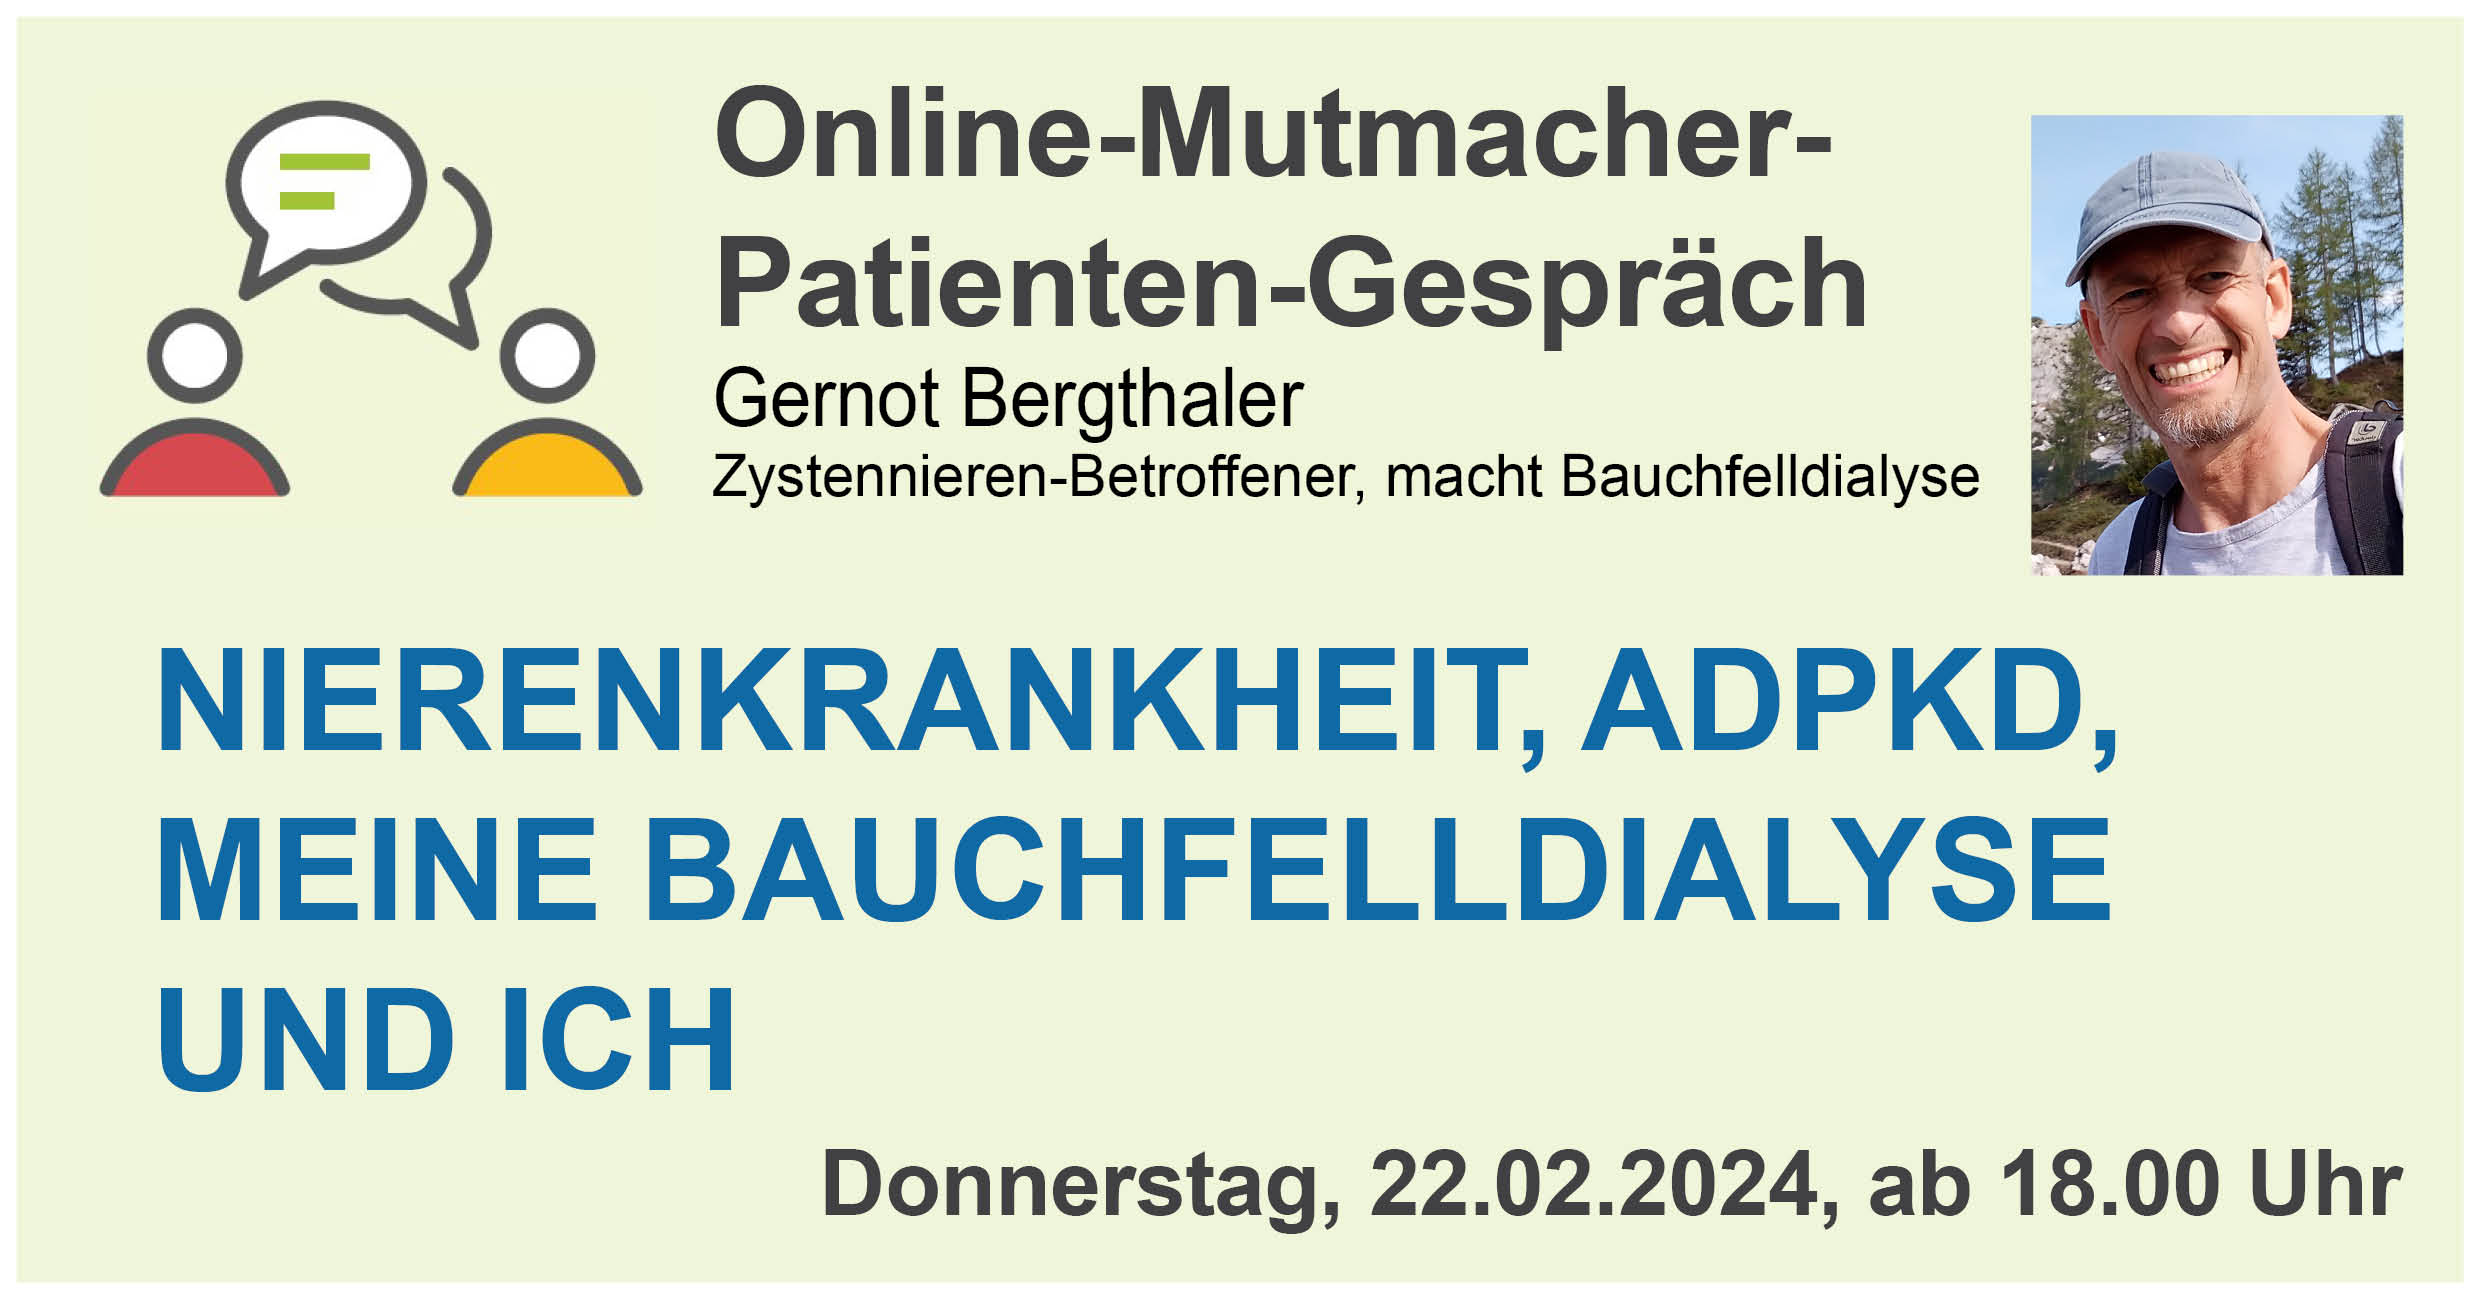 Online Mutmacher-Patienten-Gespräch mit Gernot Bergthaler